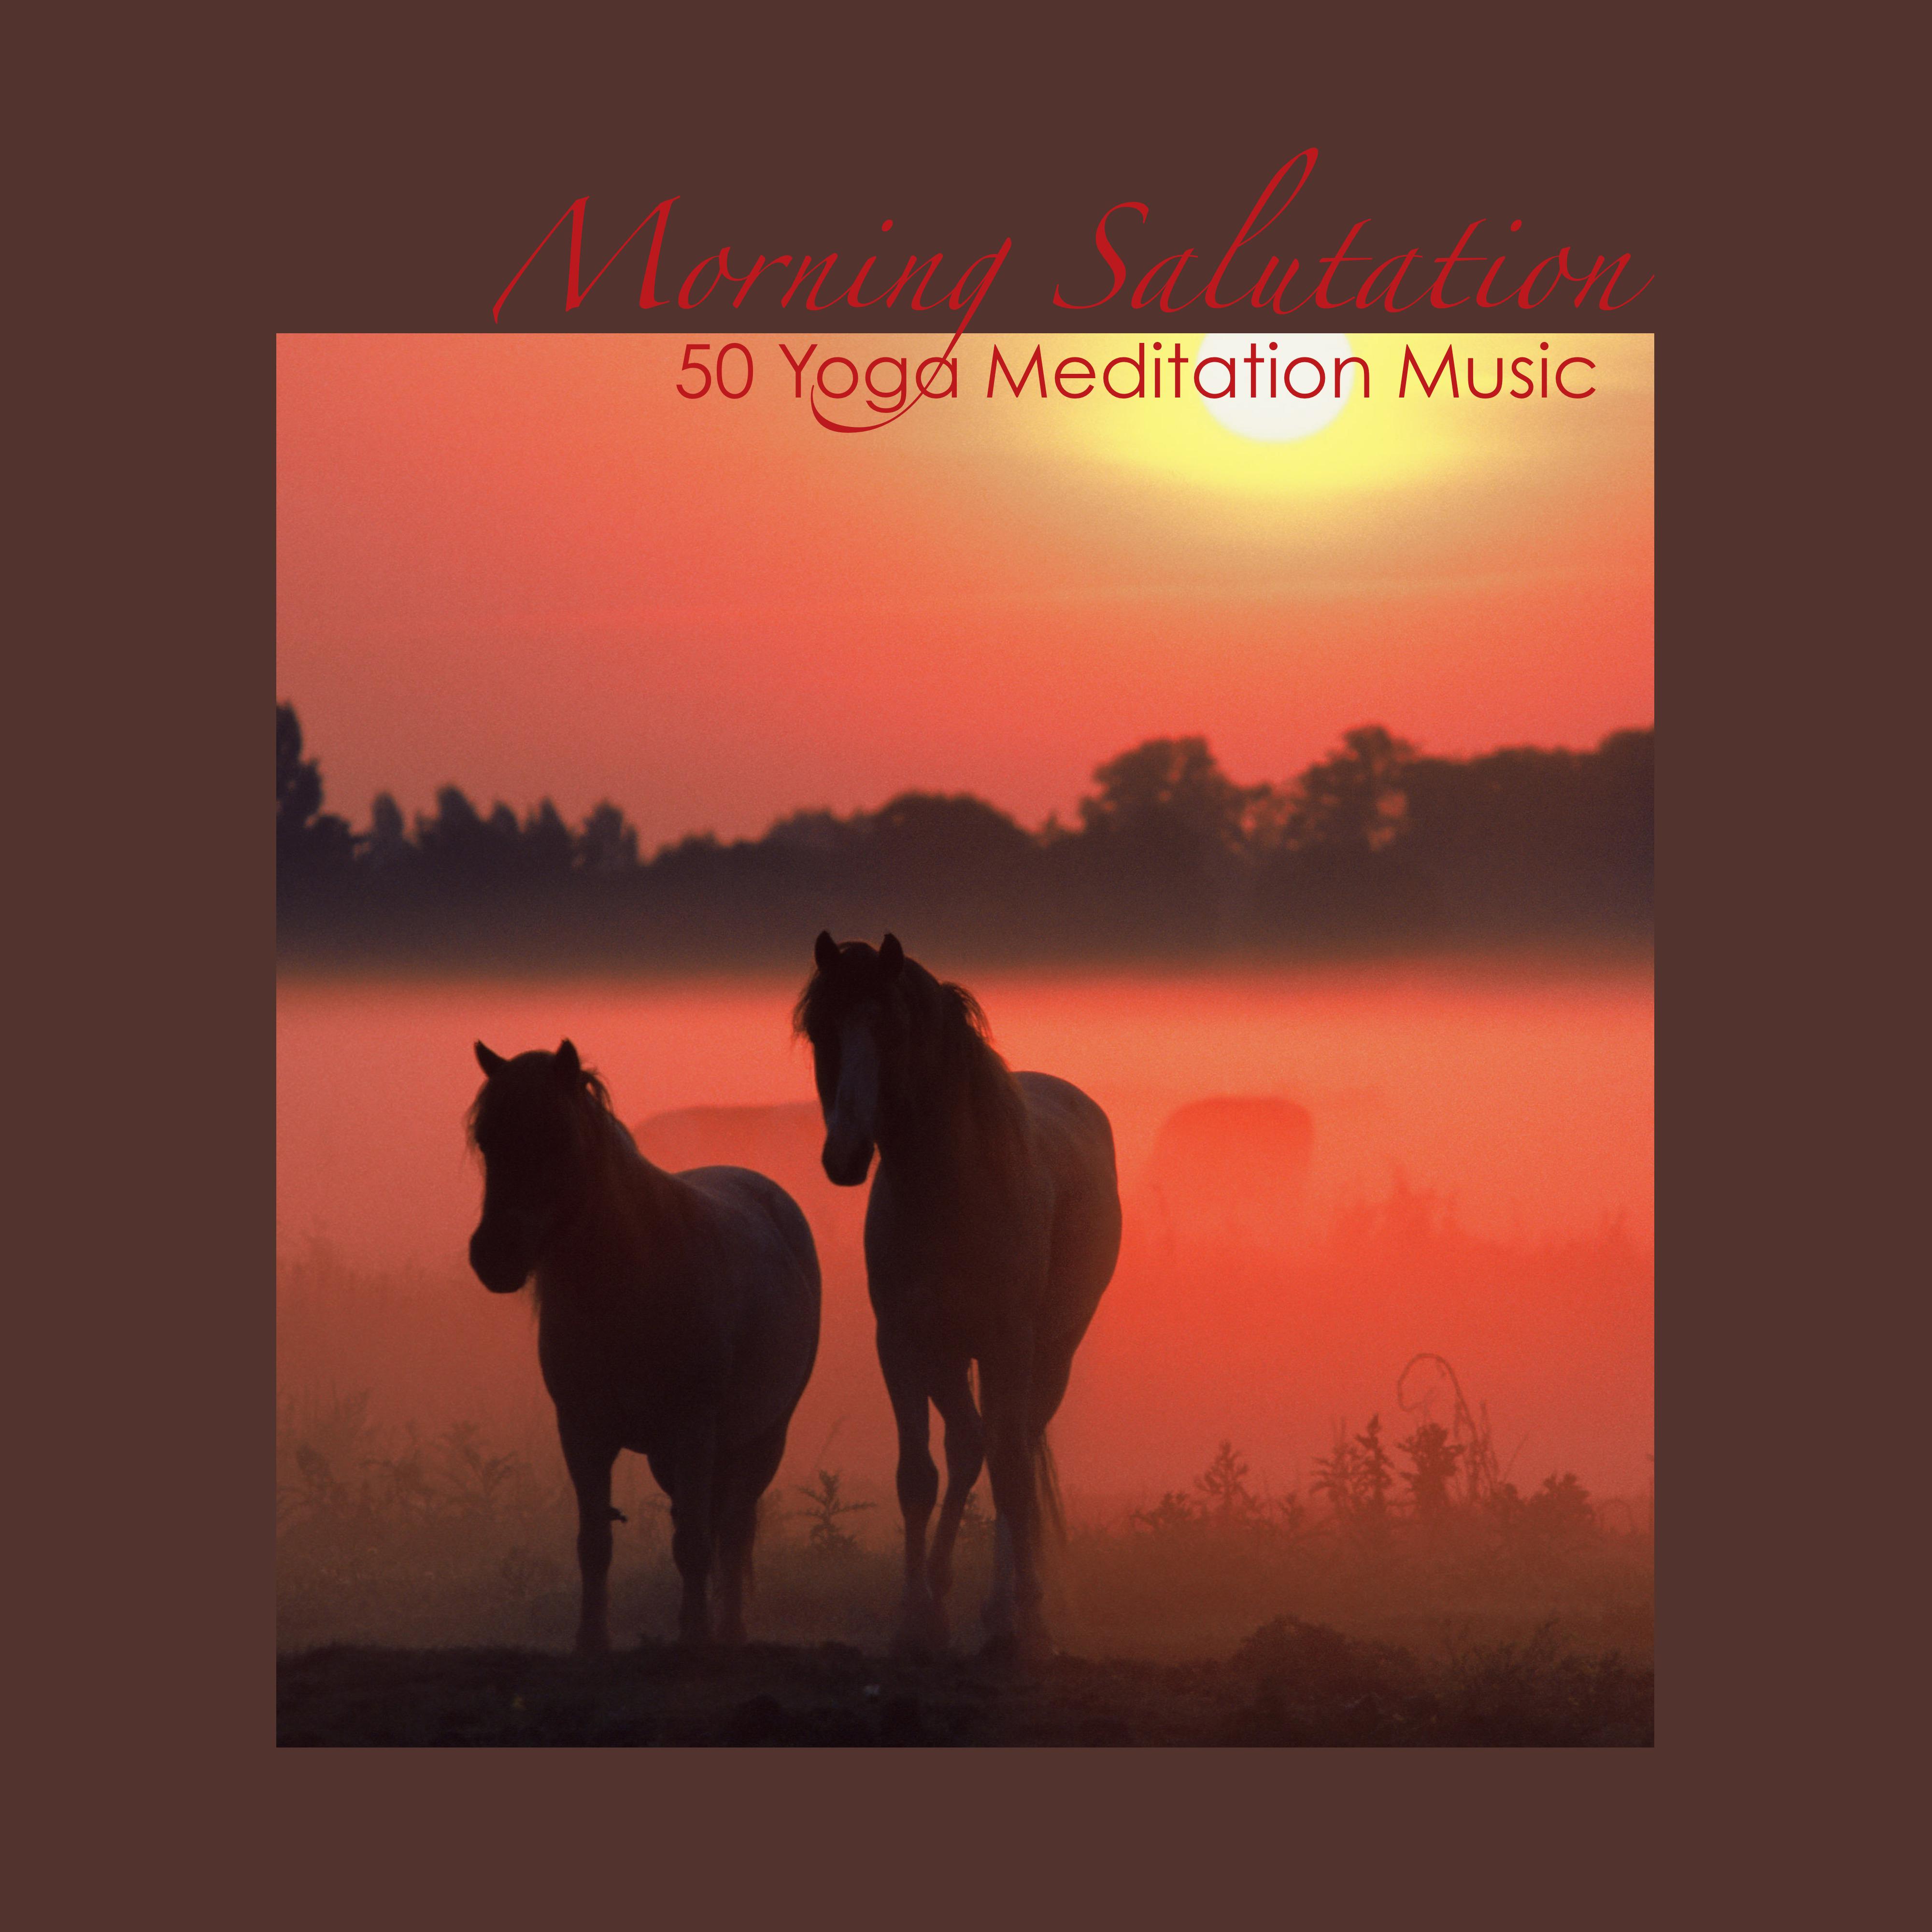 Morning Awakening with Intense Yoga Meditation Music